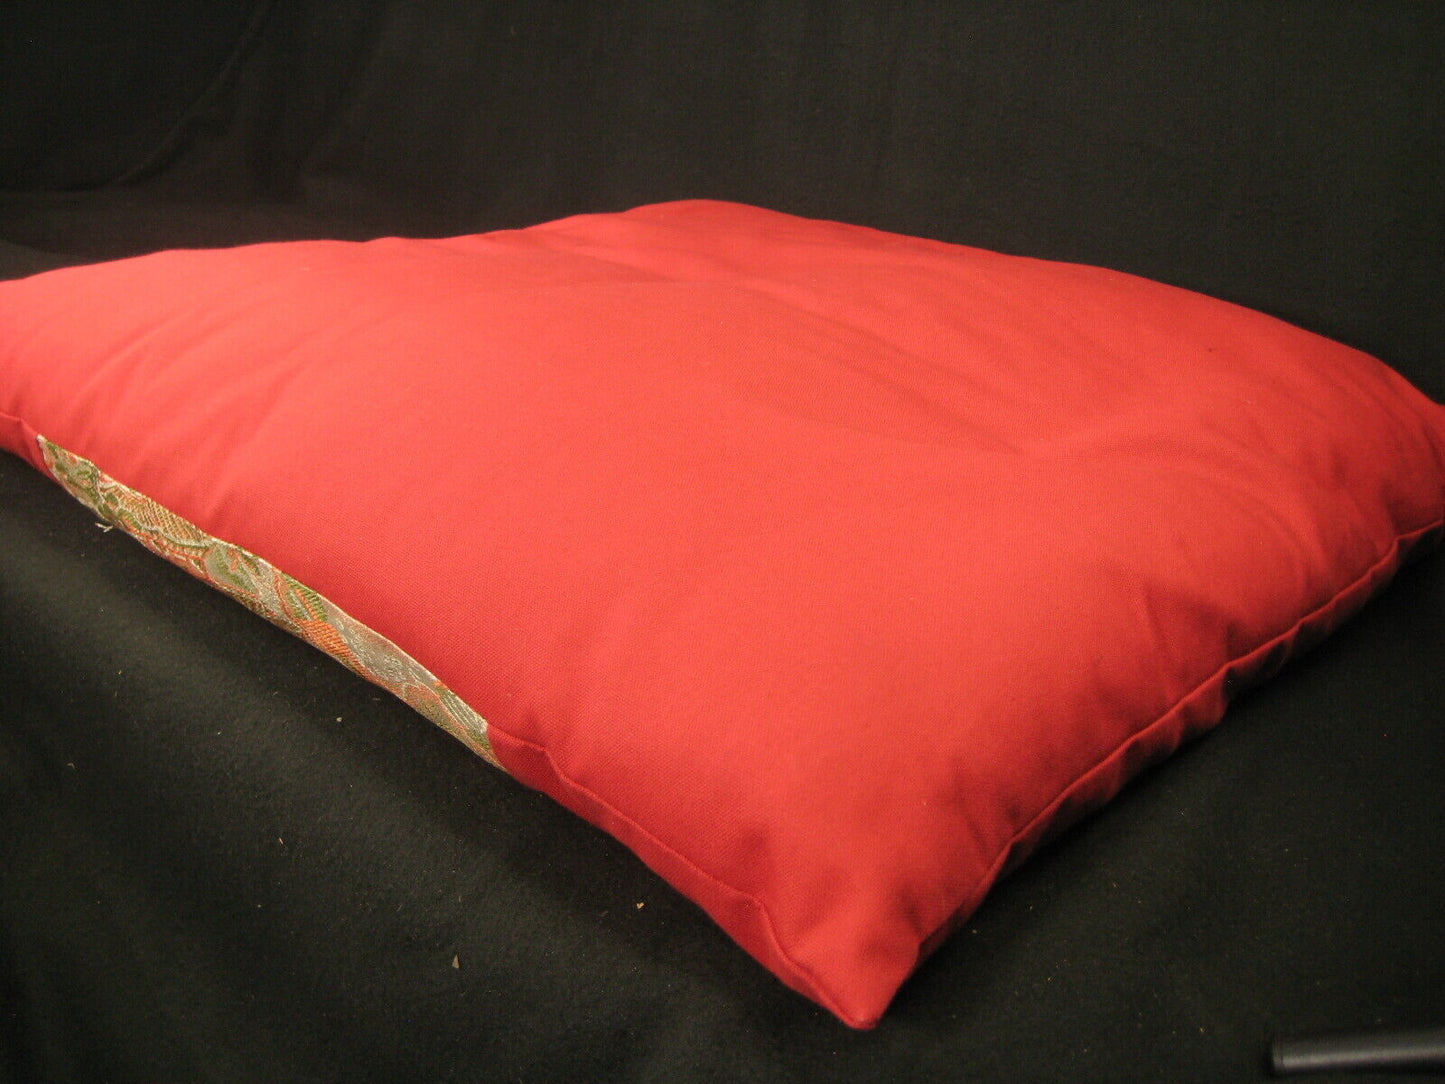 Vintage Japanese Zabuton Large Meditation Cushion Pillow With Obi Inset